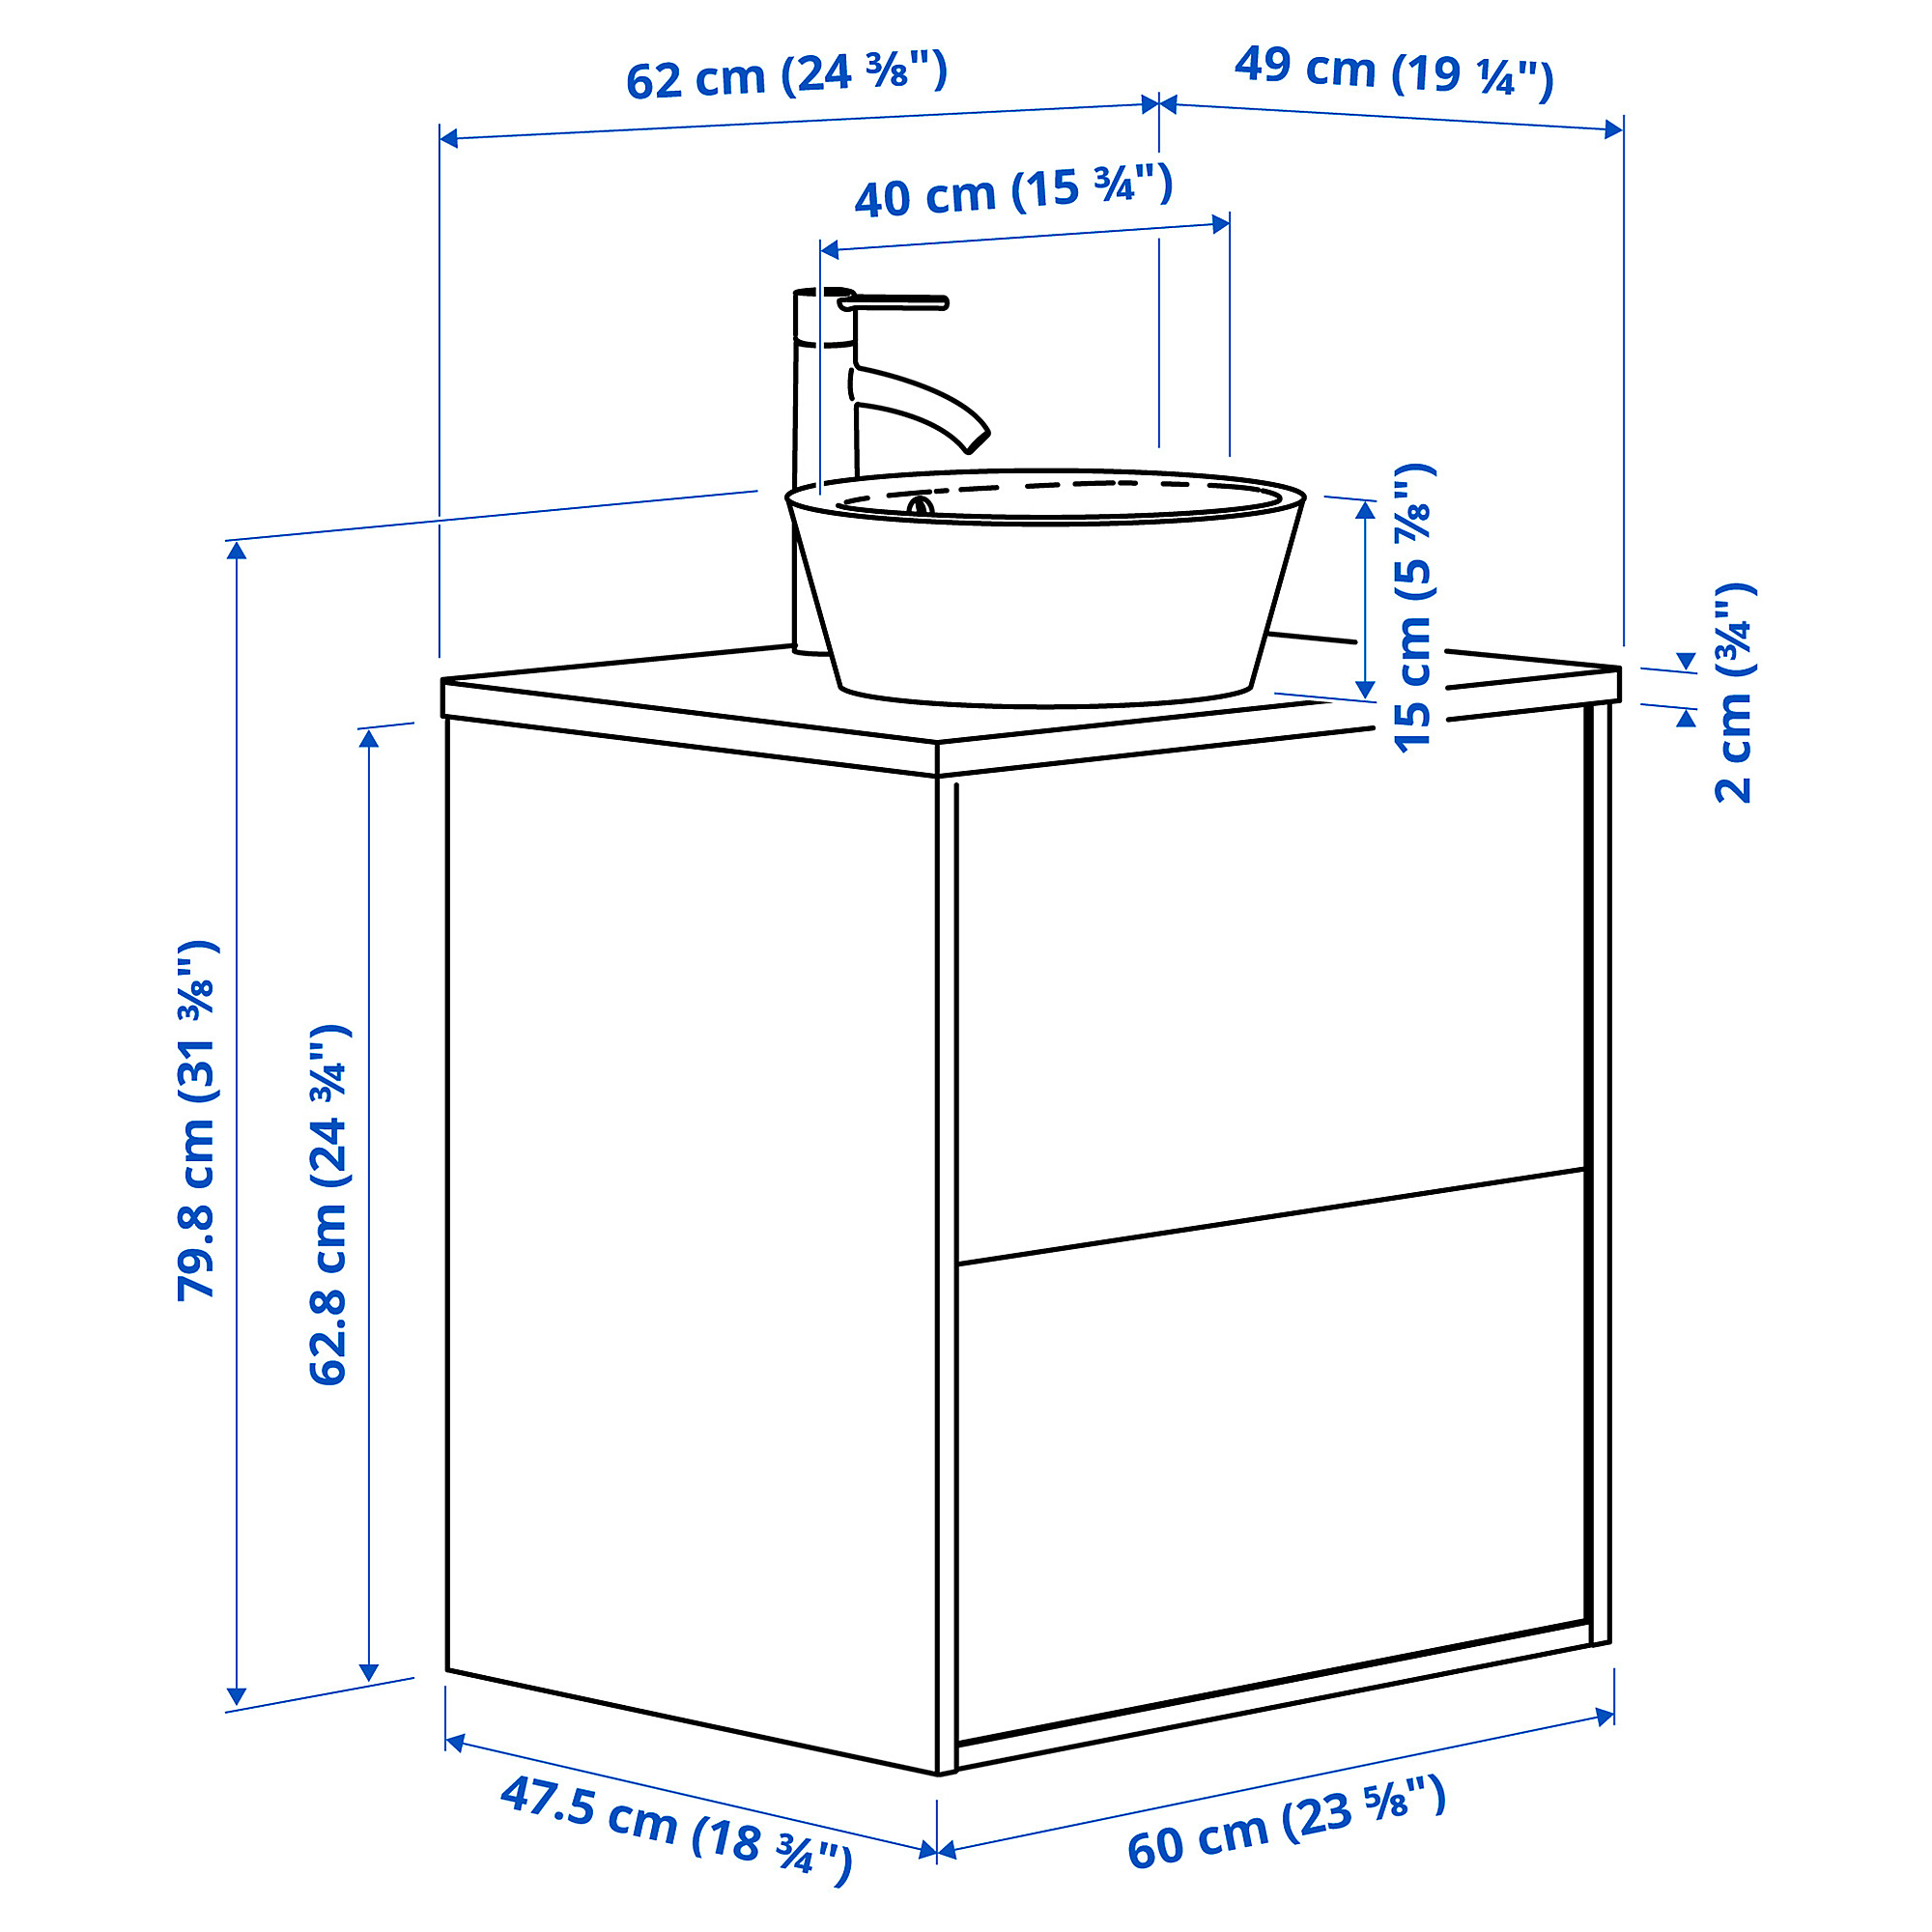 ÄNGSJÖN/KATTEVIK wash-stnd w drawers/wash-basin/tap